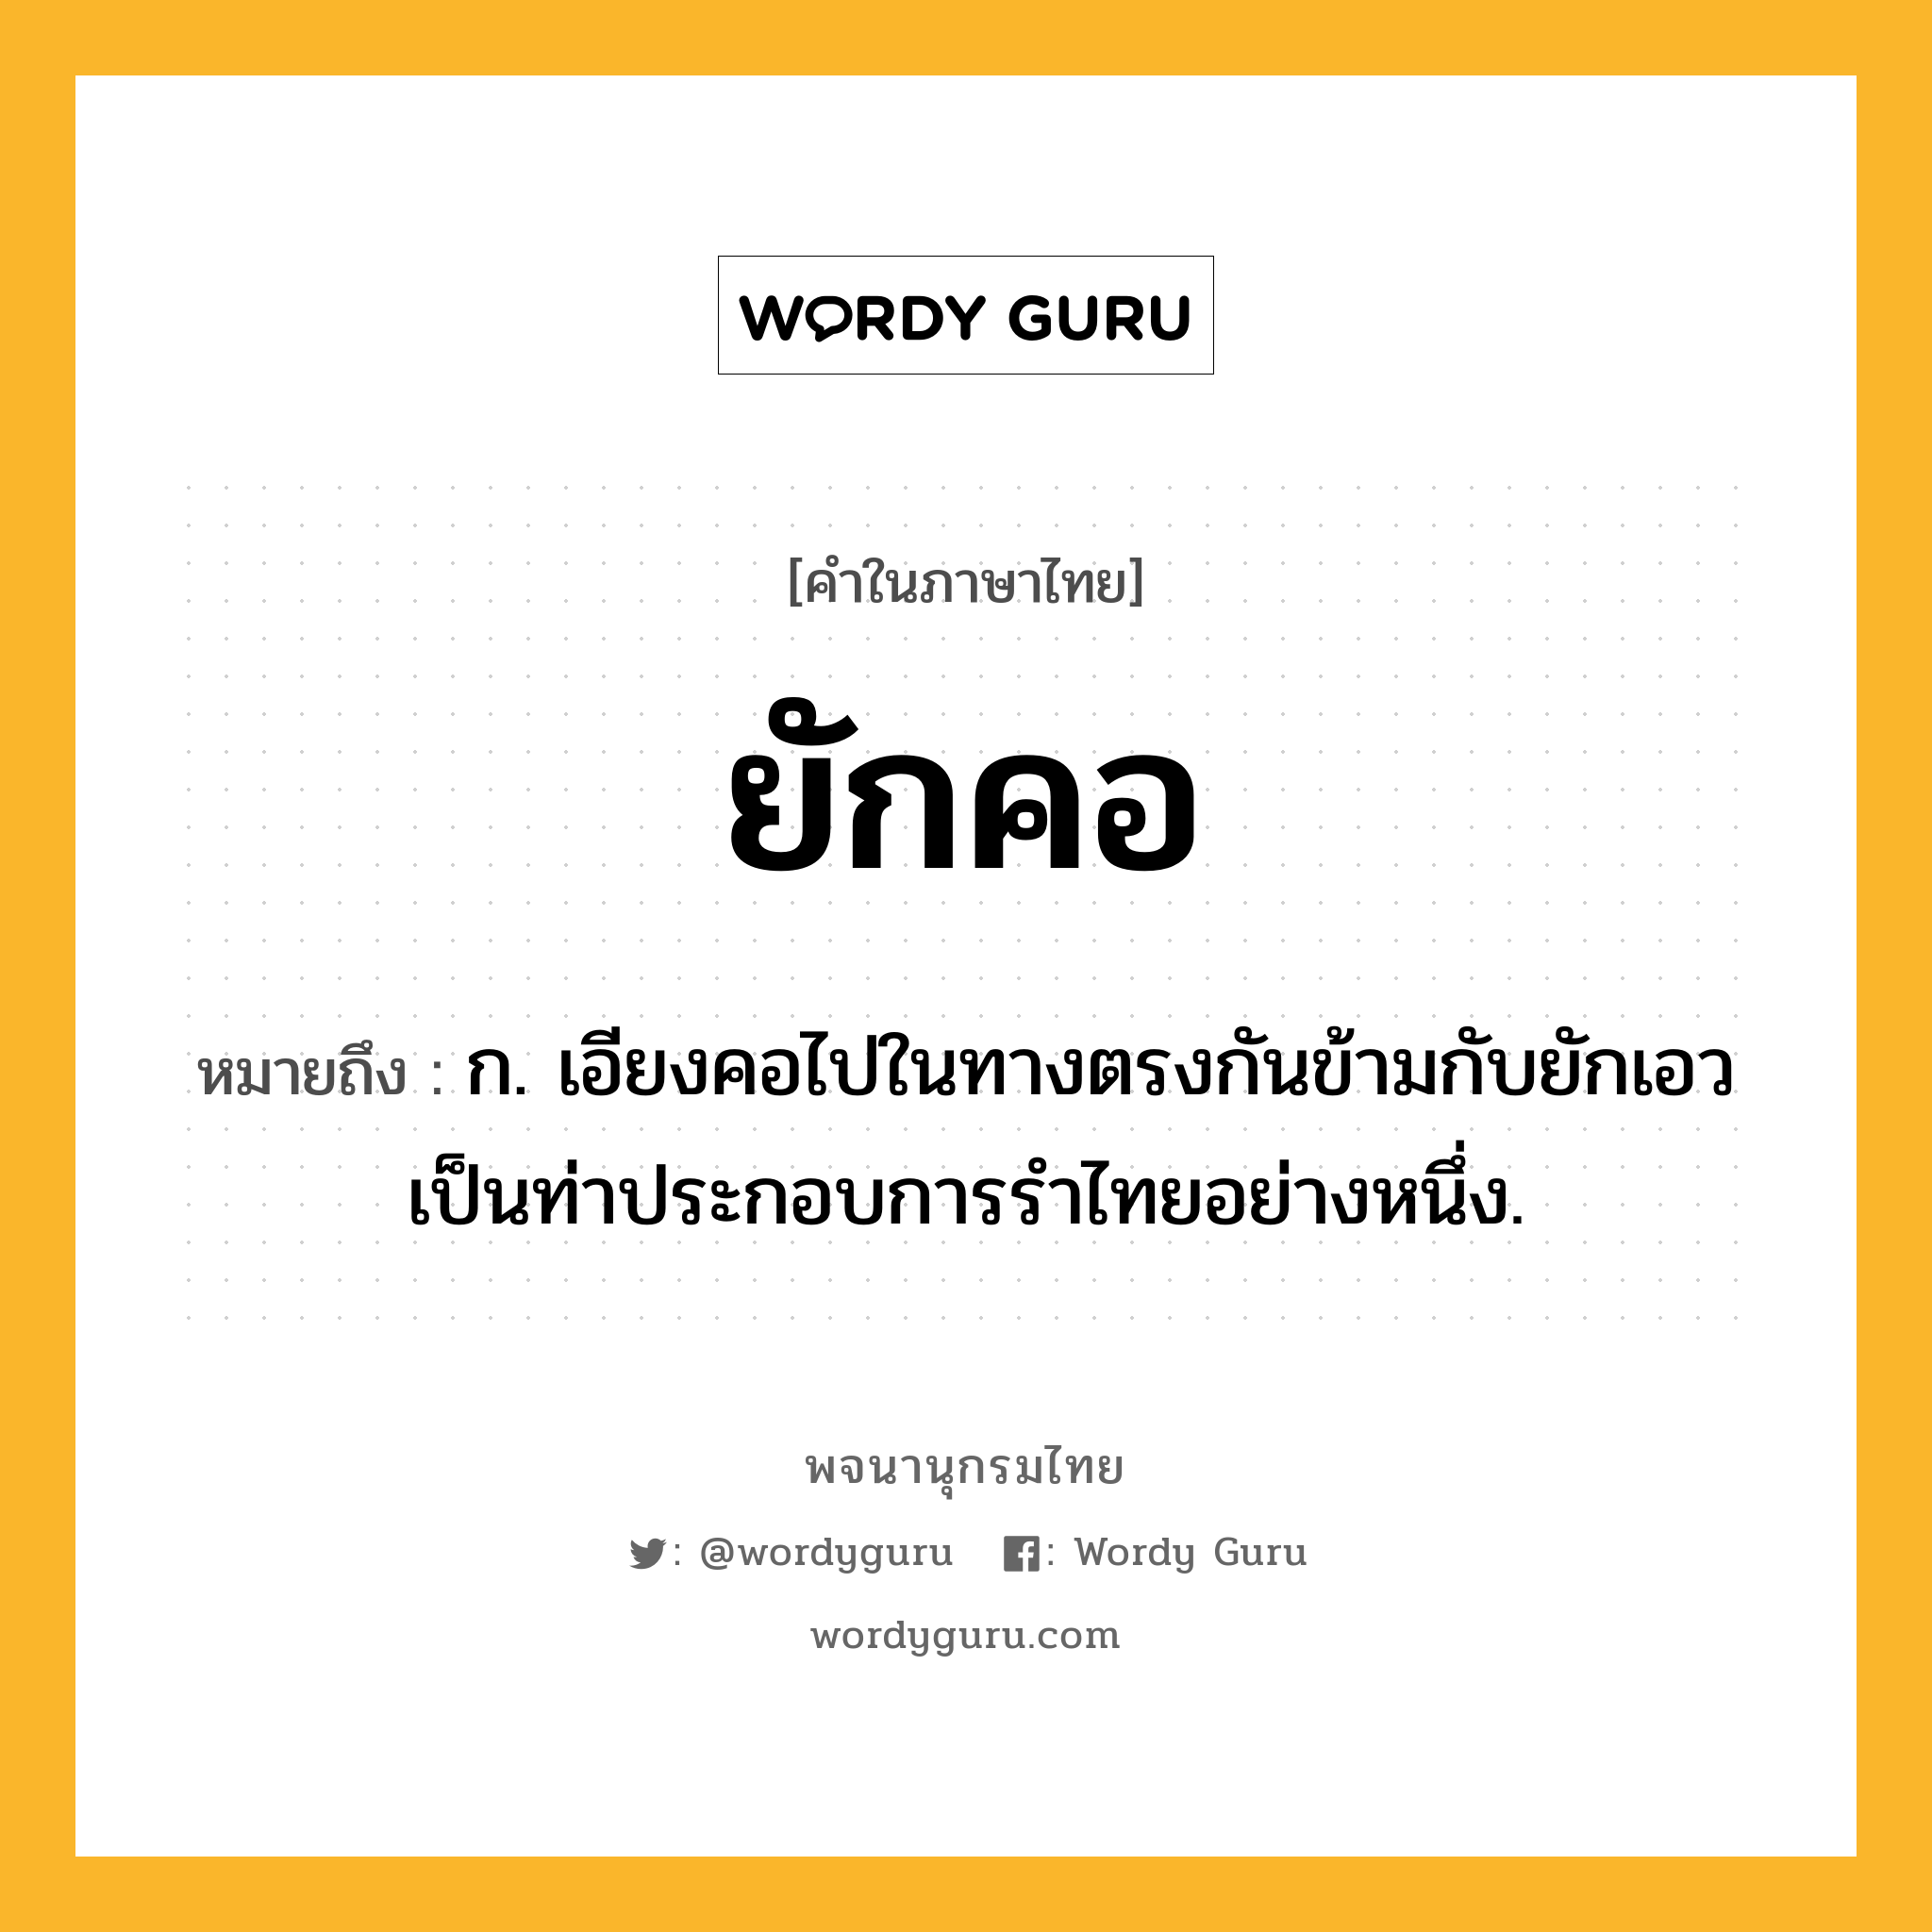 ยักคอ หมายถึงอะไร?, คำในภาษาไทย ยักคอ หมายถึง ก. เอียงคอไปในทางตรงกันข้ามกับยักเอว เป็นท่าประกอบการรำไทยอย่างหนึ่ง.